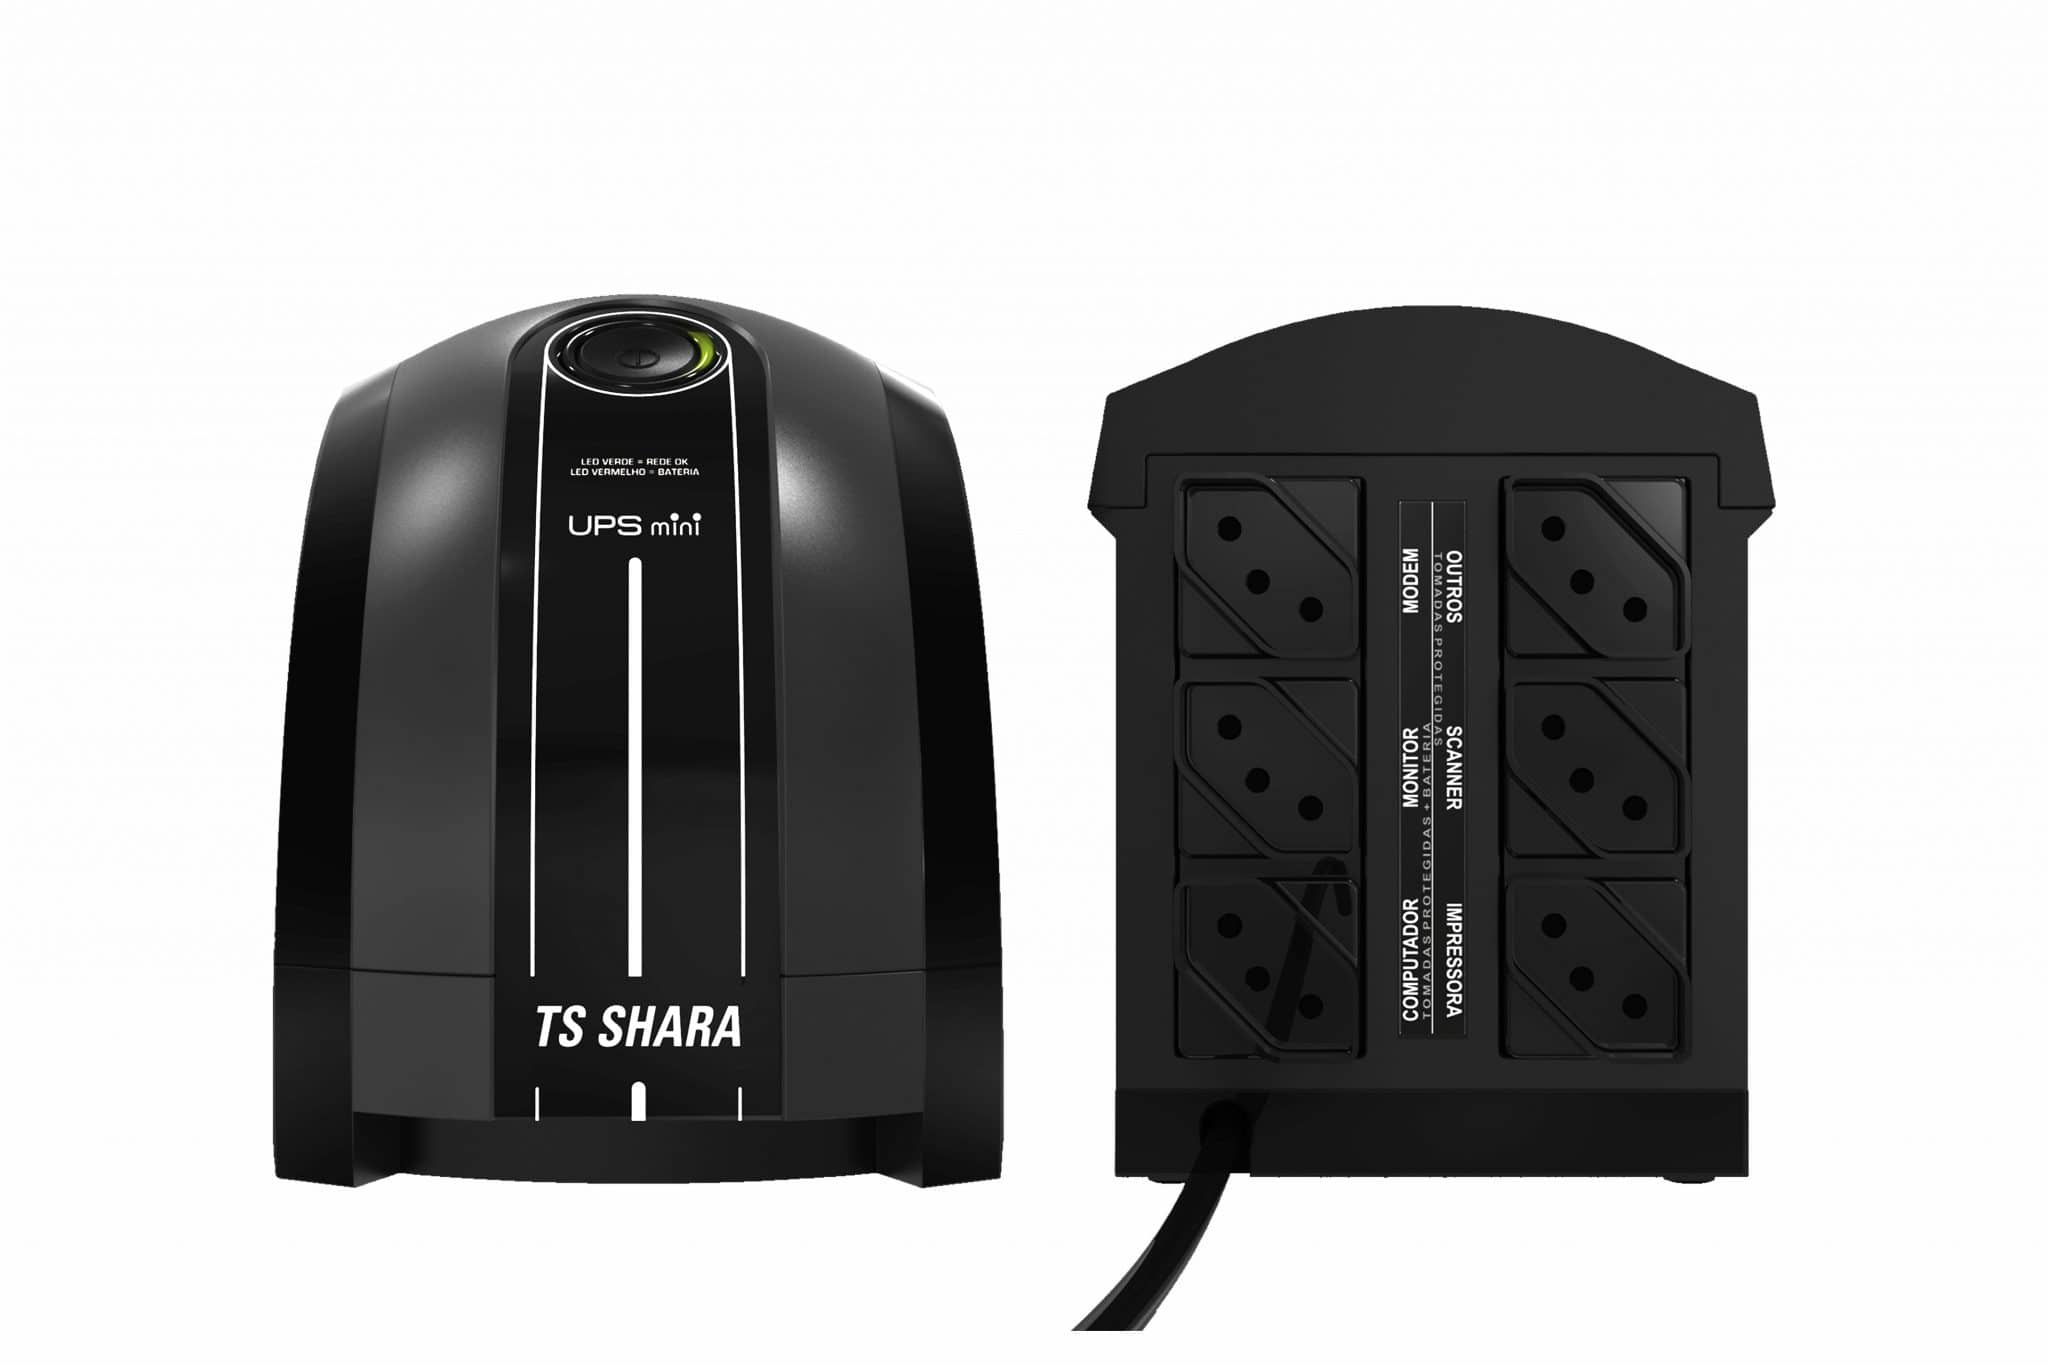 Nobreak TS Shara UPS Mini microprocessado da TS SHARA é a melhor relação custo benefício do mercado, pois renune tecnologia e preço competitivo.